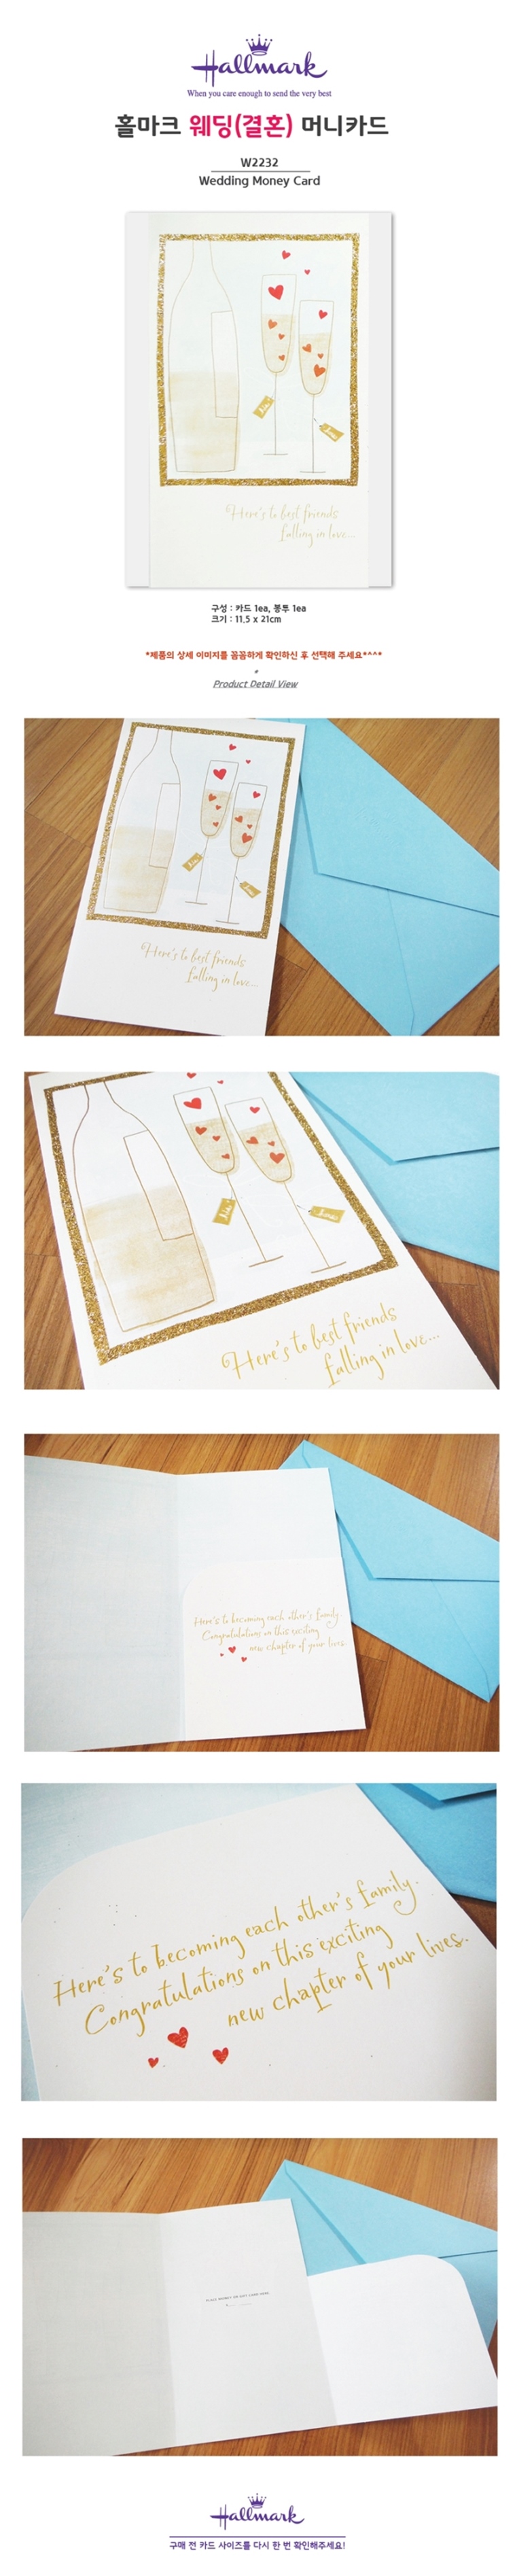 홀마크 웨딩(결혼) 축하 머니카드(샴페인)-W2232,홀마크,축하 카드, 디자인쇼핑몰 바보사랑